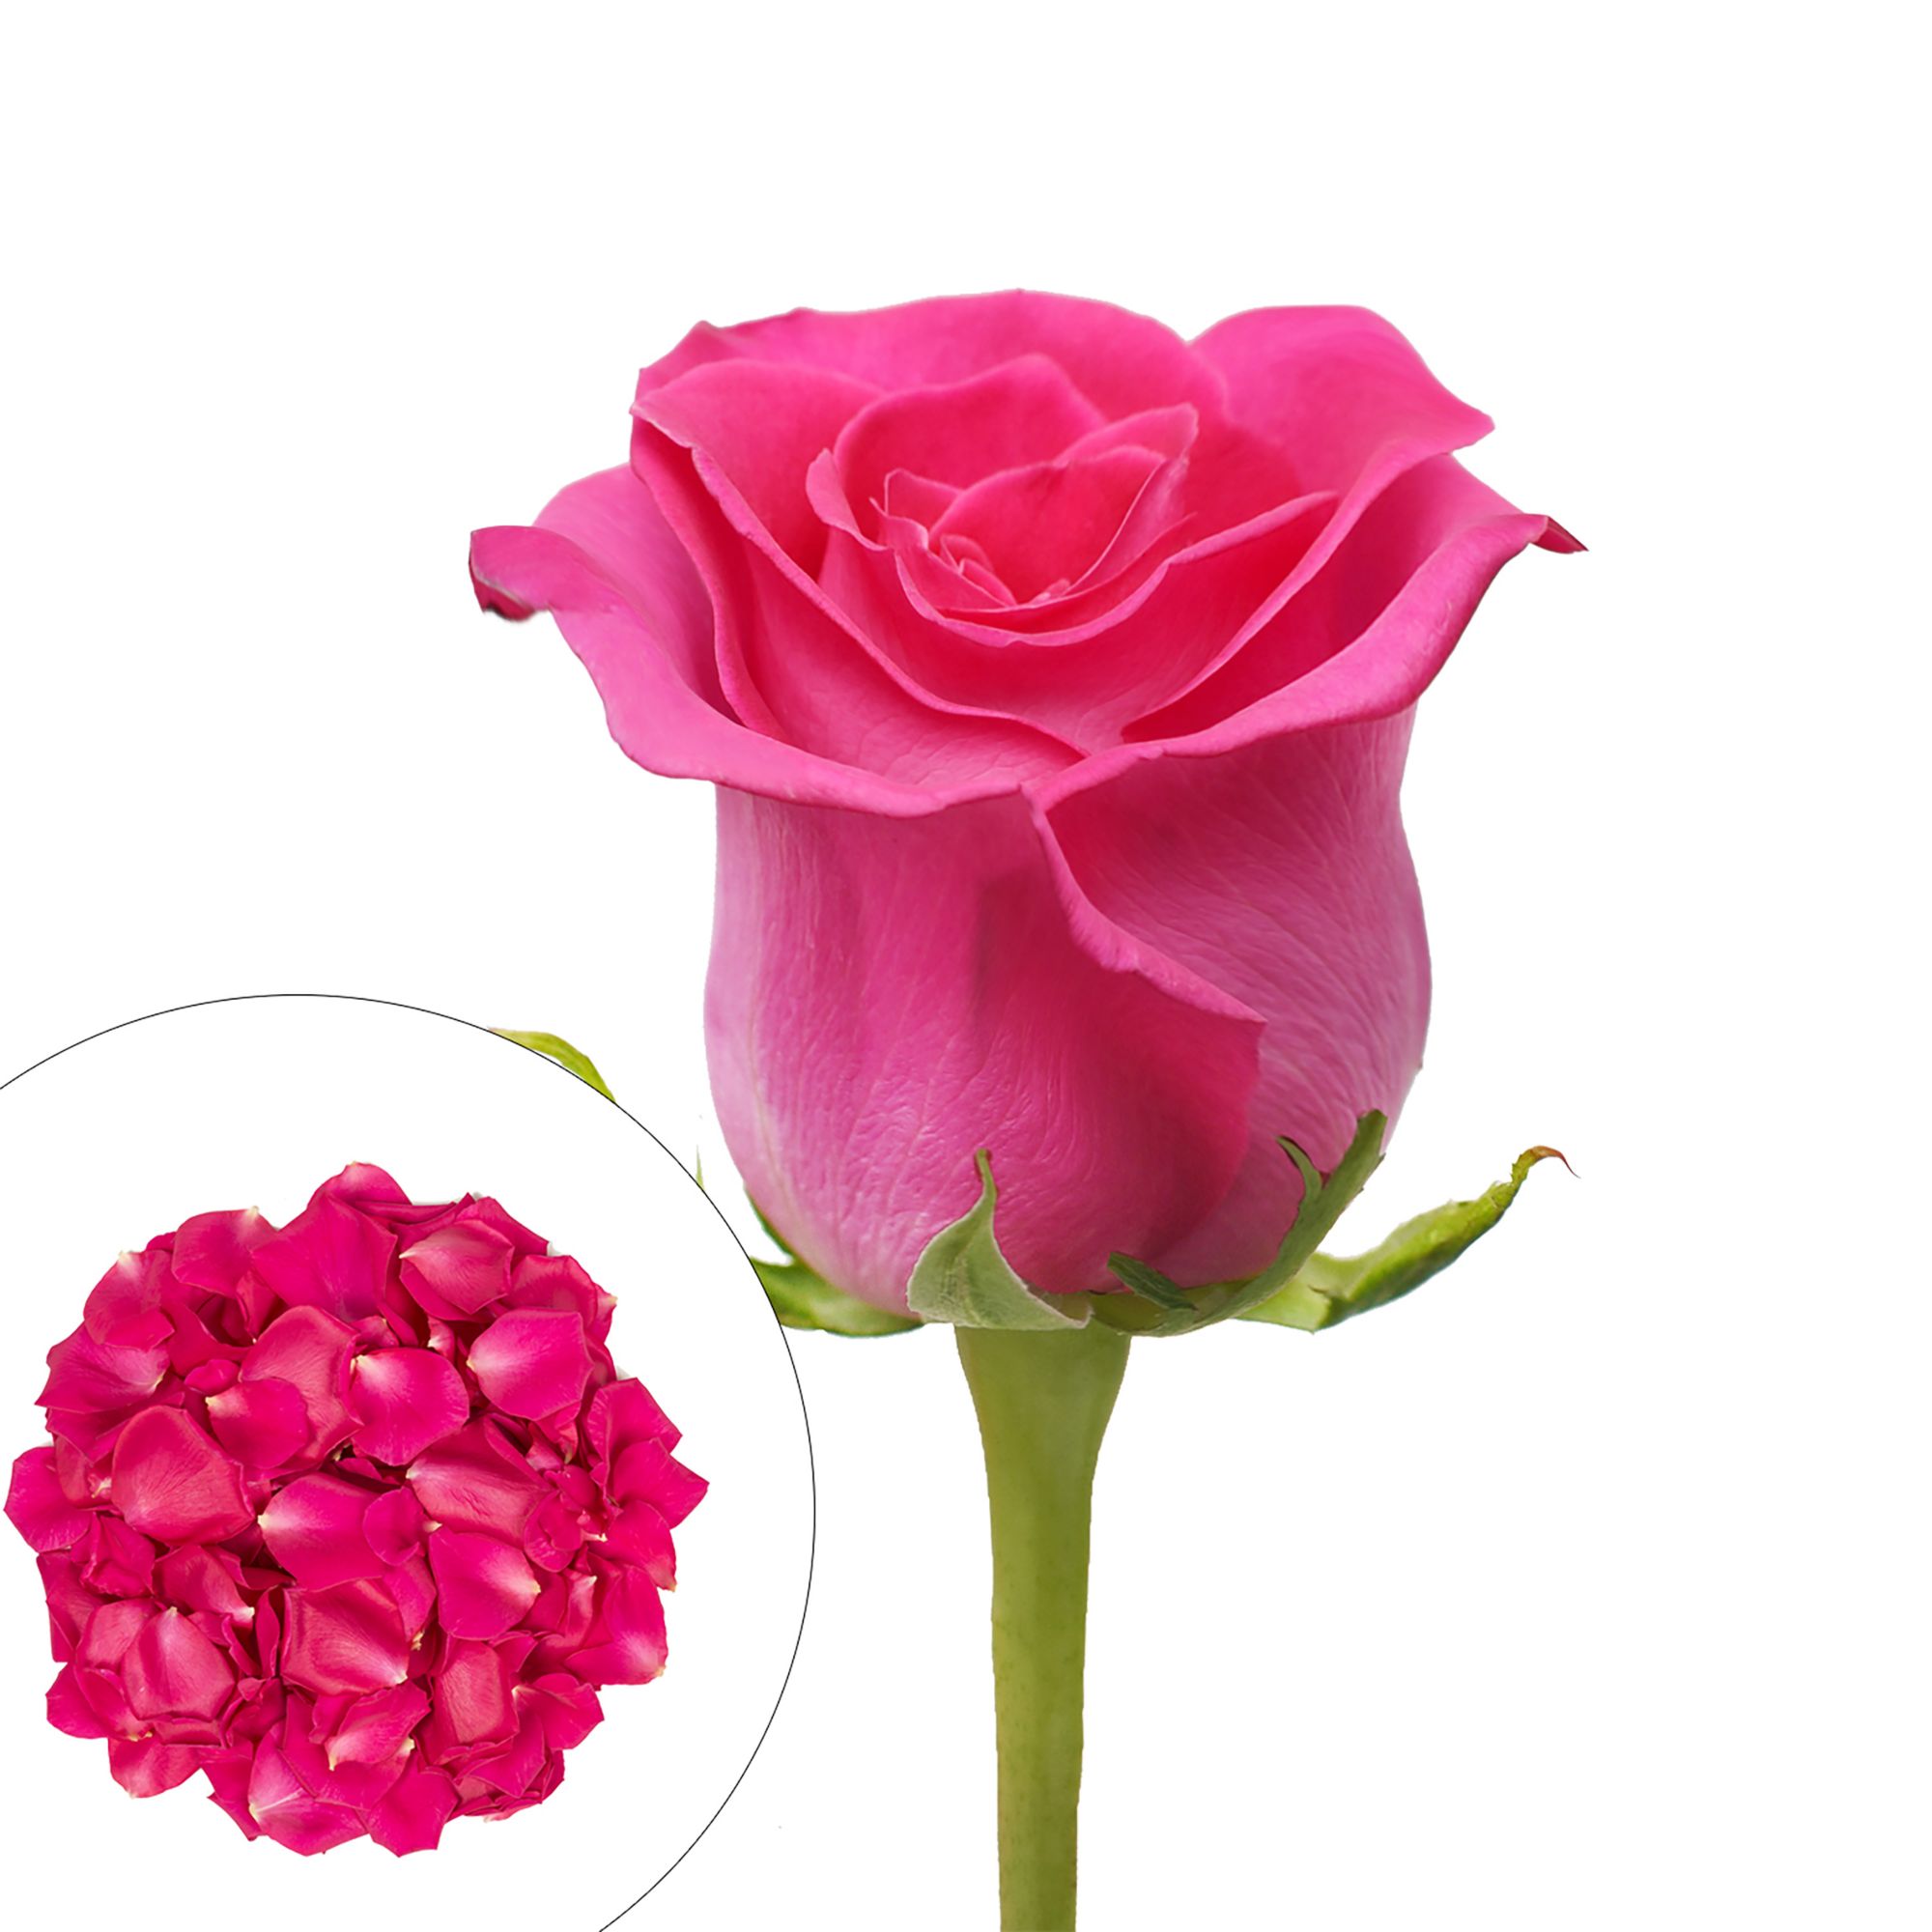 Roses and Petals Combo Box, 75/2,000 pk. - Hot Pink